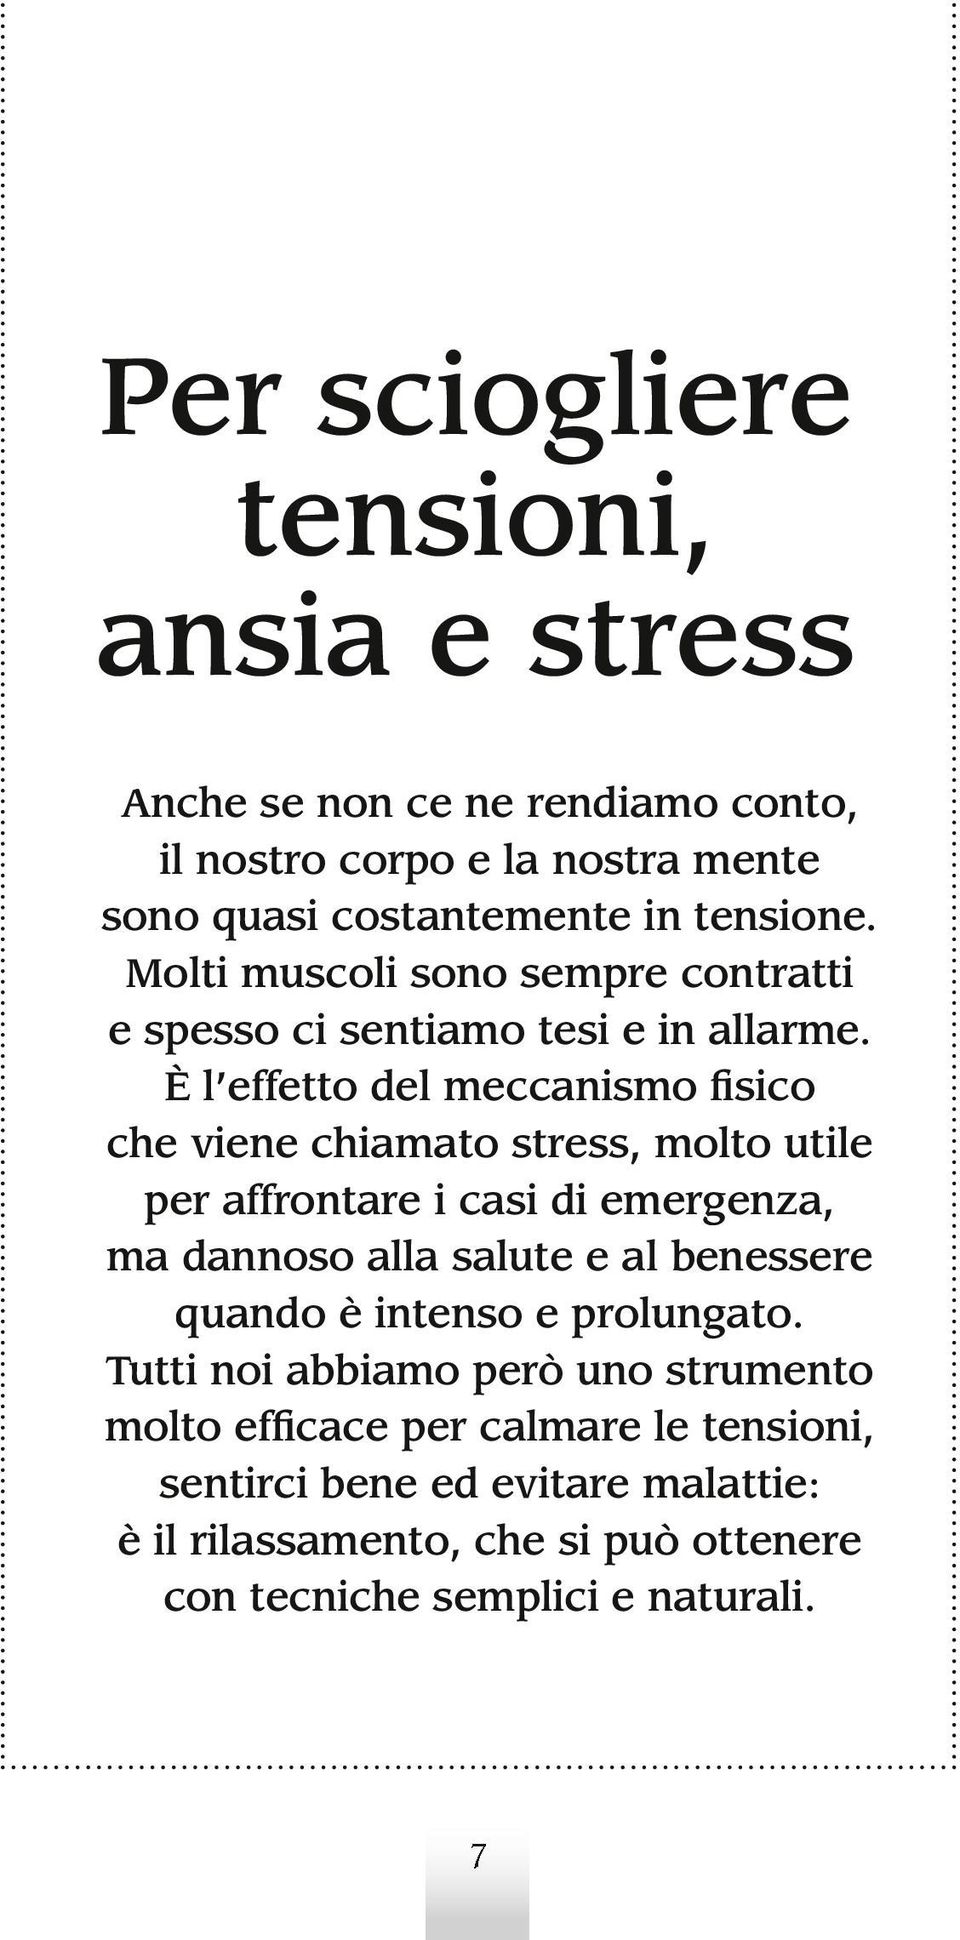 È l effetto del meccanismo fisico che viene chiamato stress, molto utile per affrontare i casi di emergenza, ma dannoso alla salute e al benessere